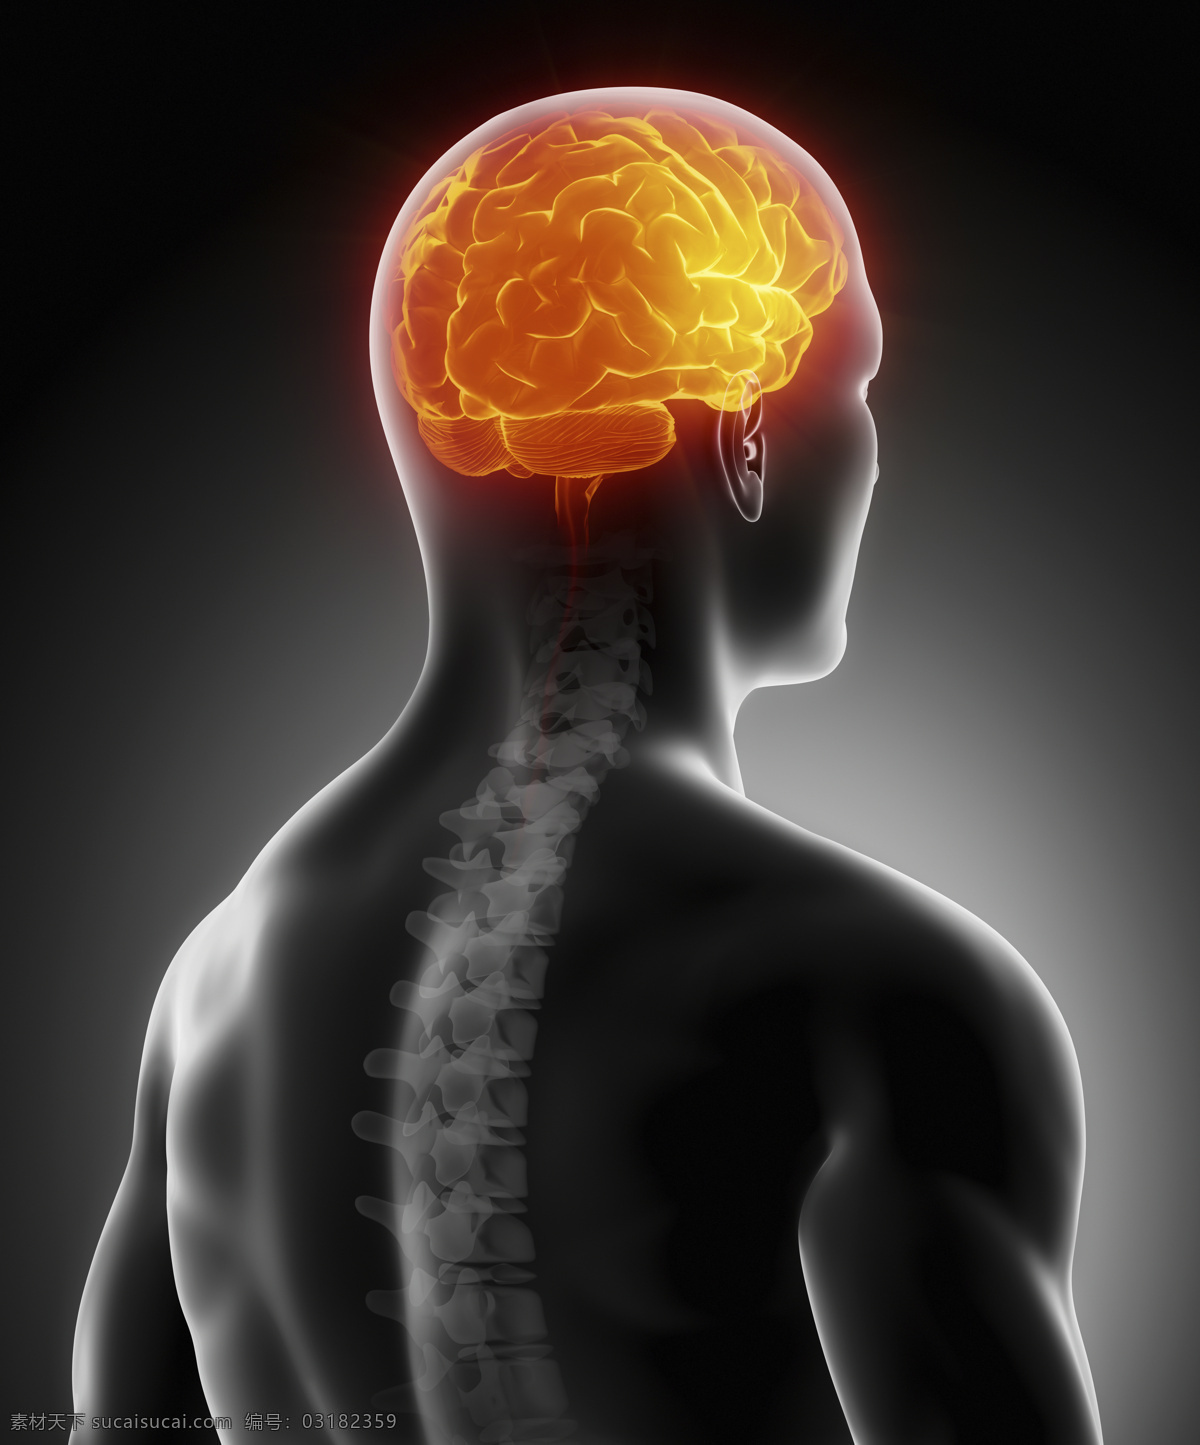 大脑 器官 脊椎 人脑 脑髓 男性人体器官 脊髓 骨骼 人体器官 医疗科学 医学 人体器官图 人物图片